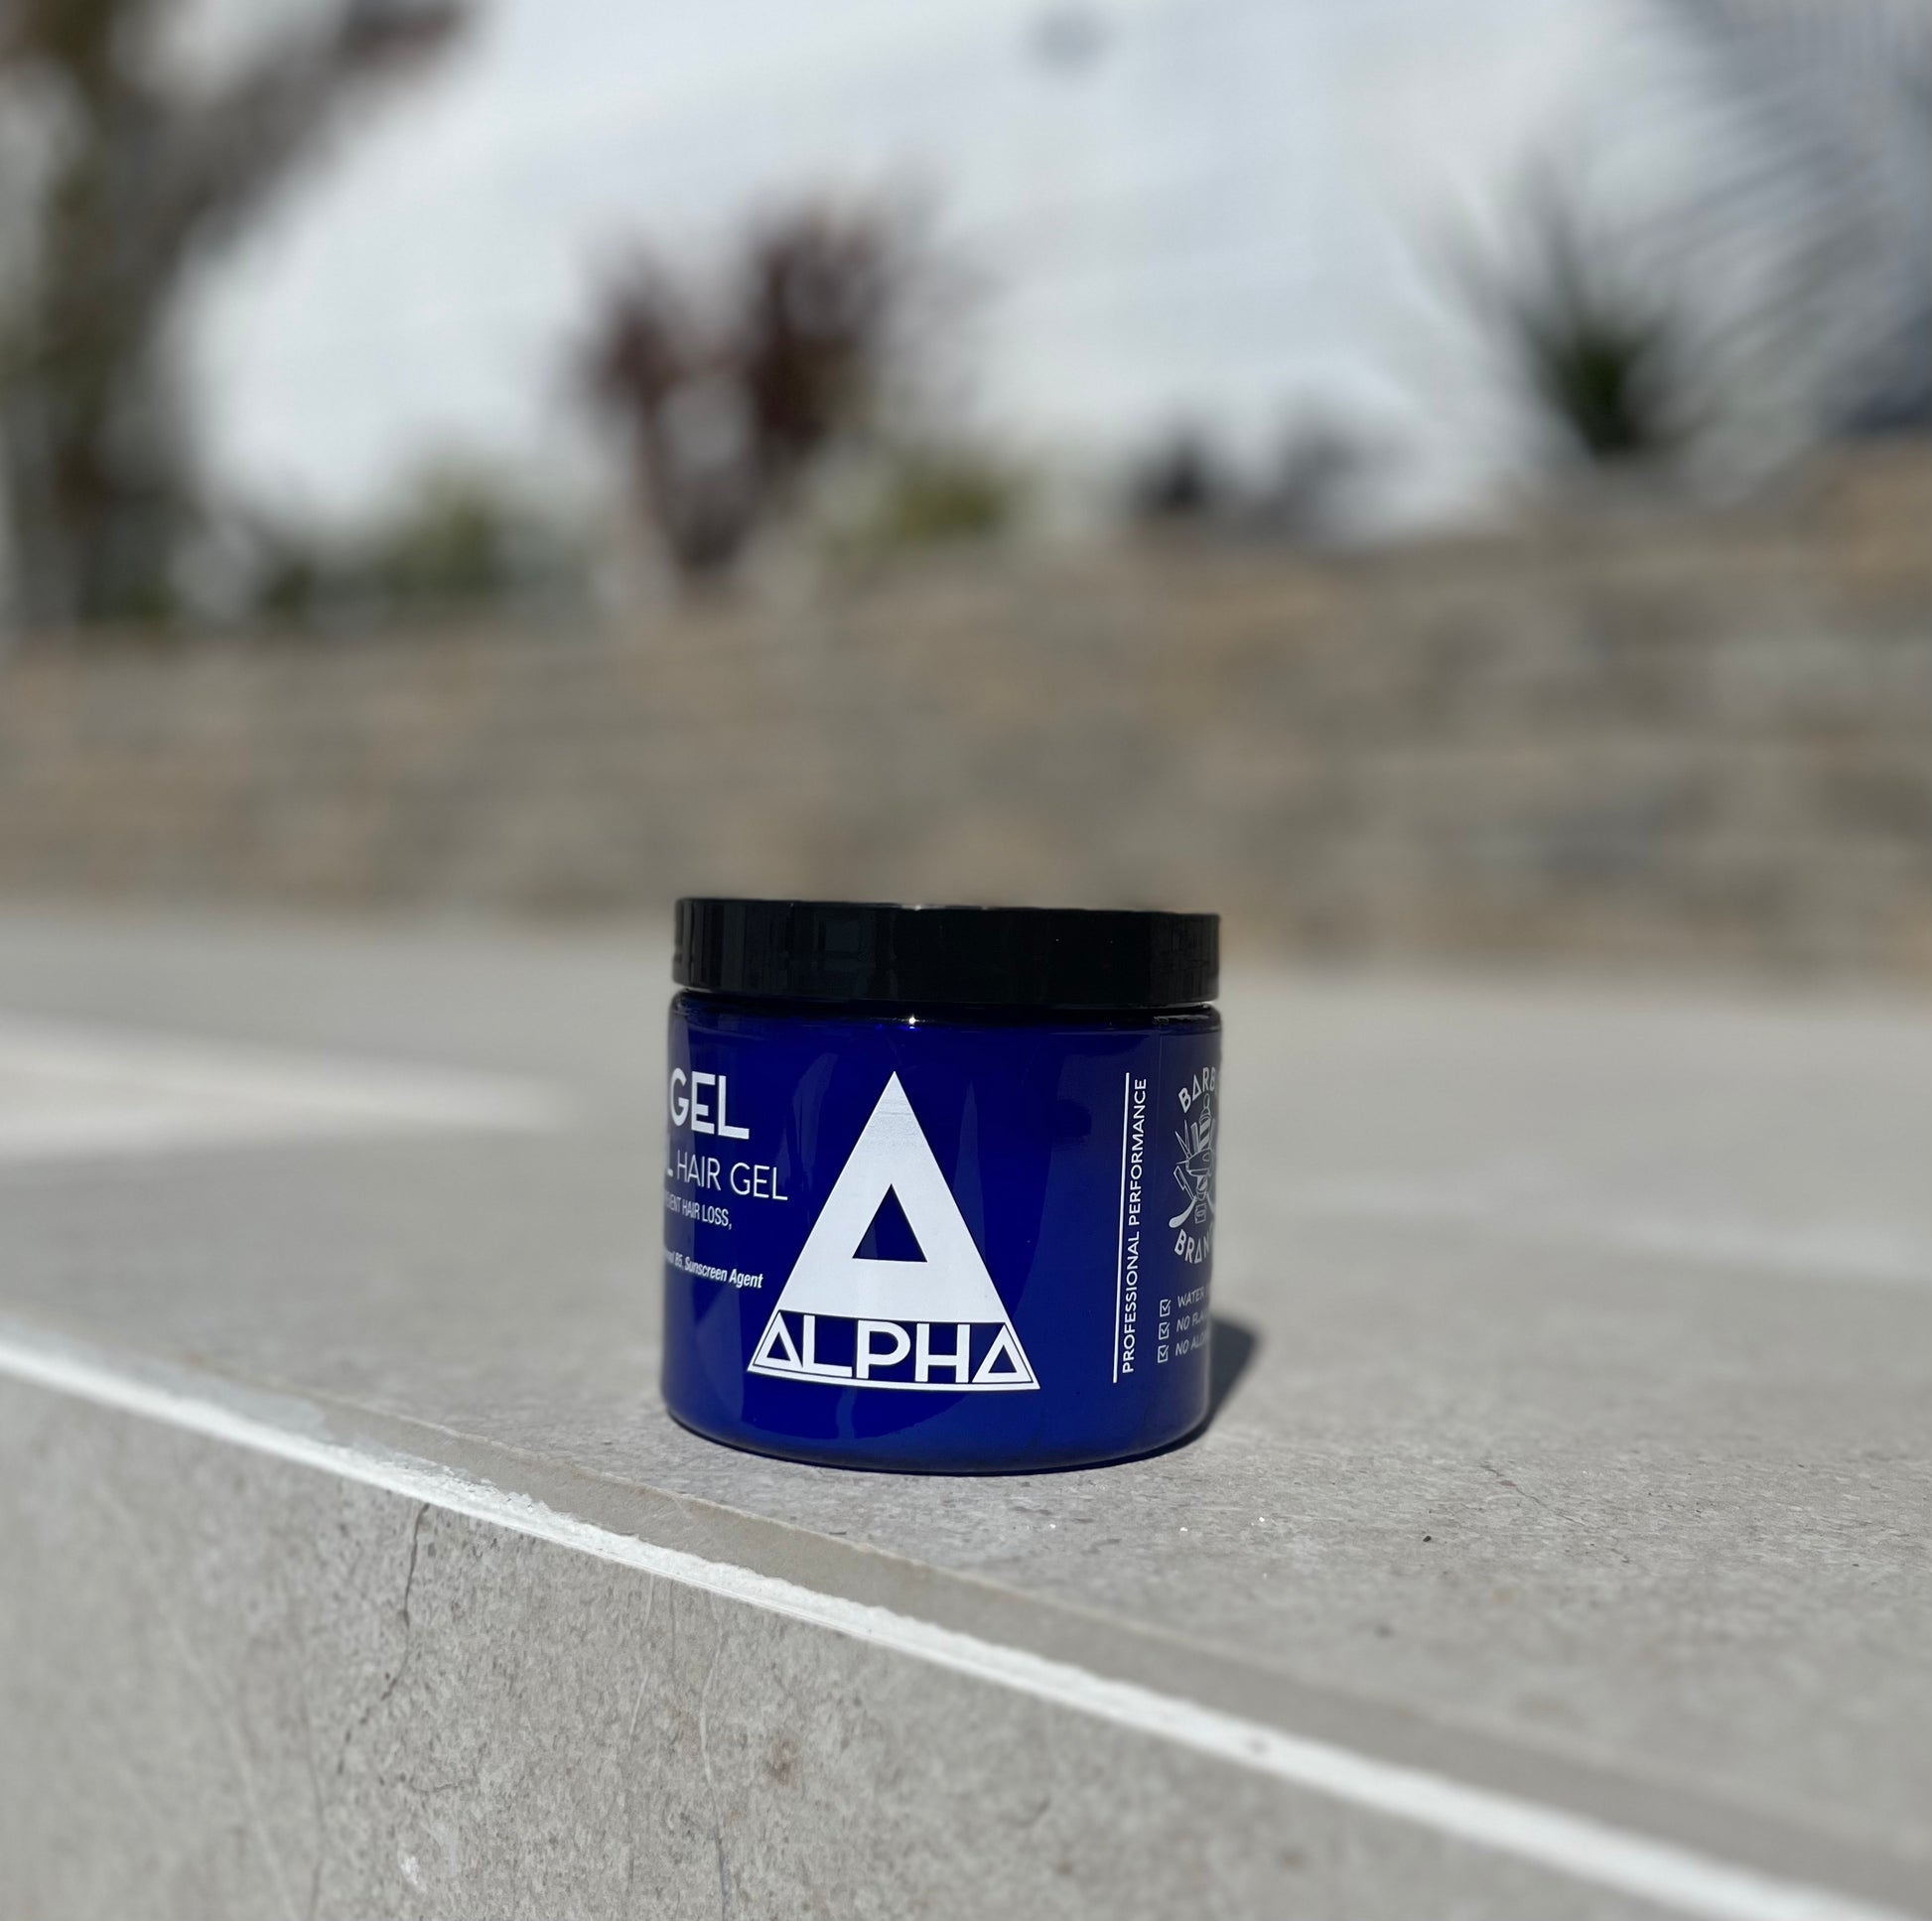 Alpha Hair gel ( Blue) – Alpha hair products